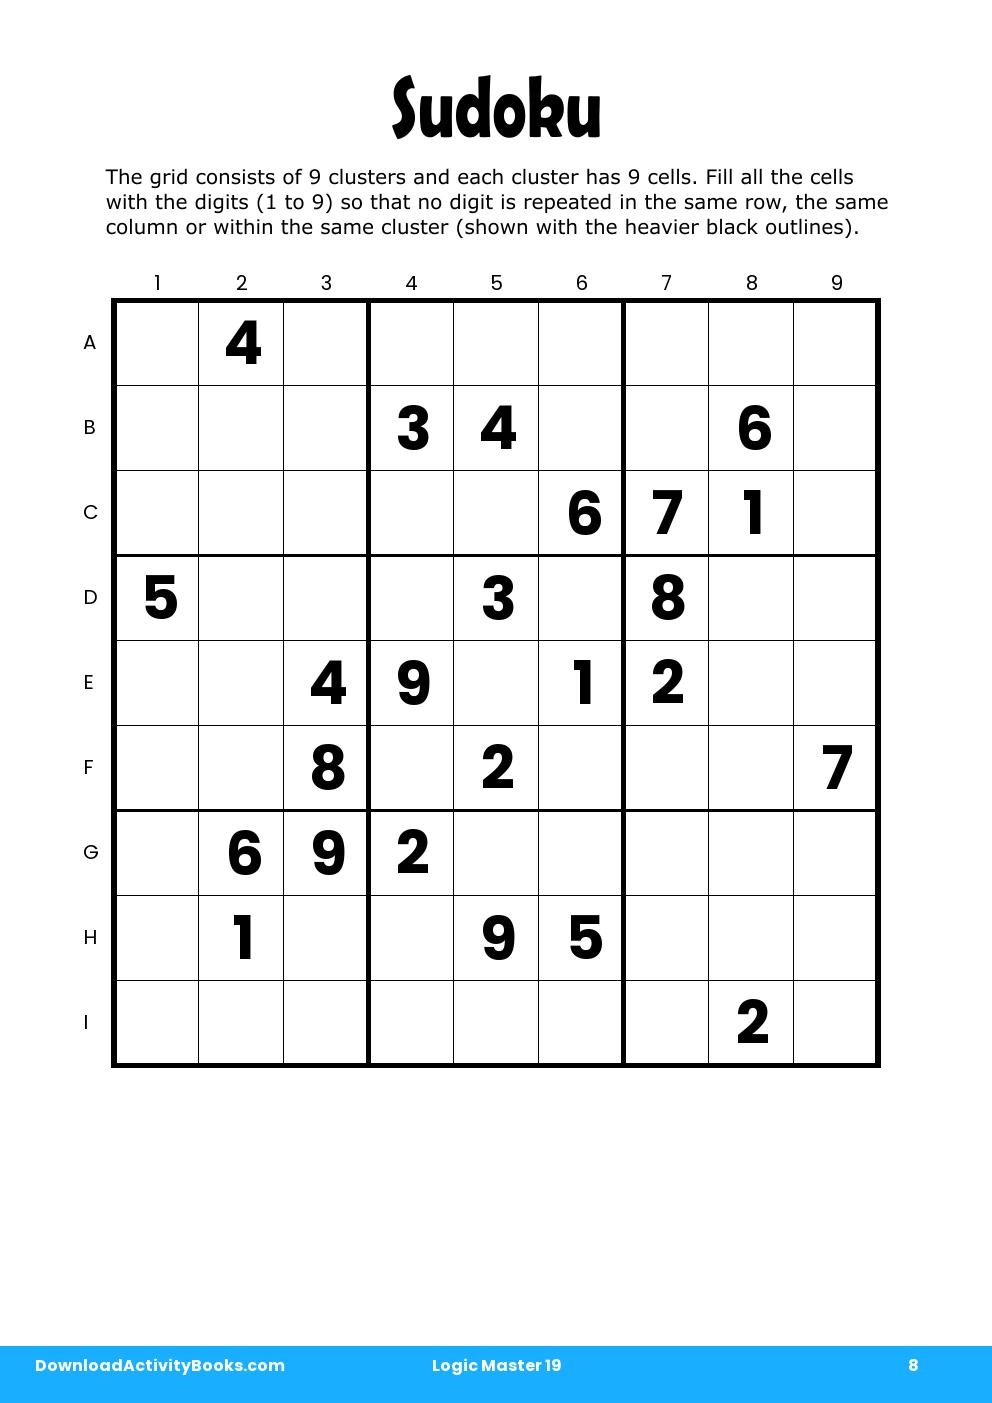 Sudoku in Logic Master 19